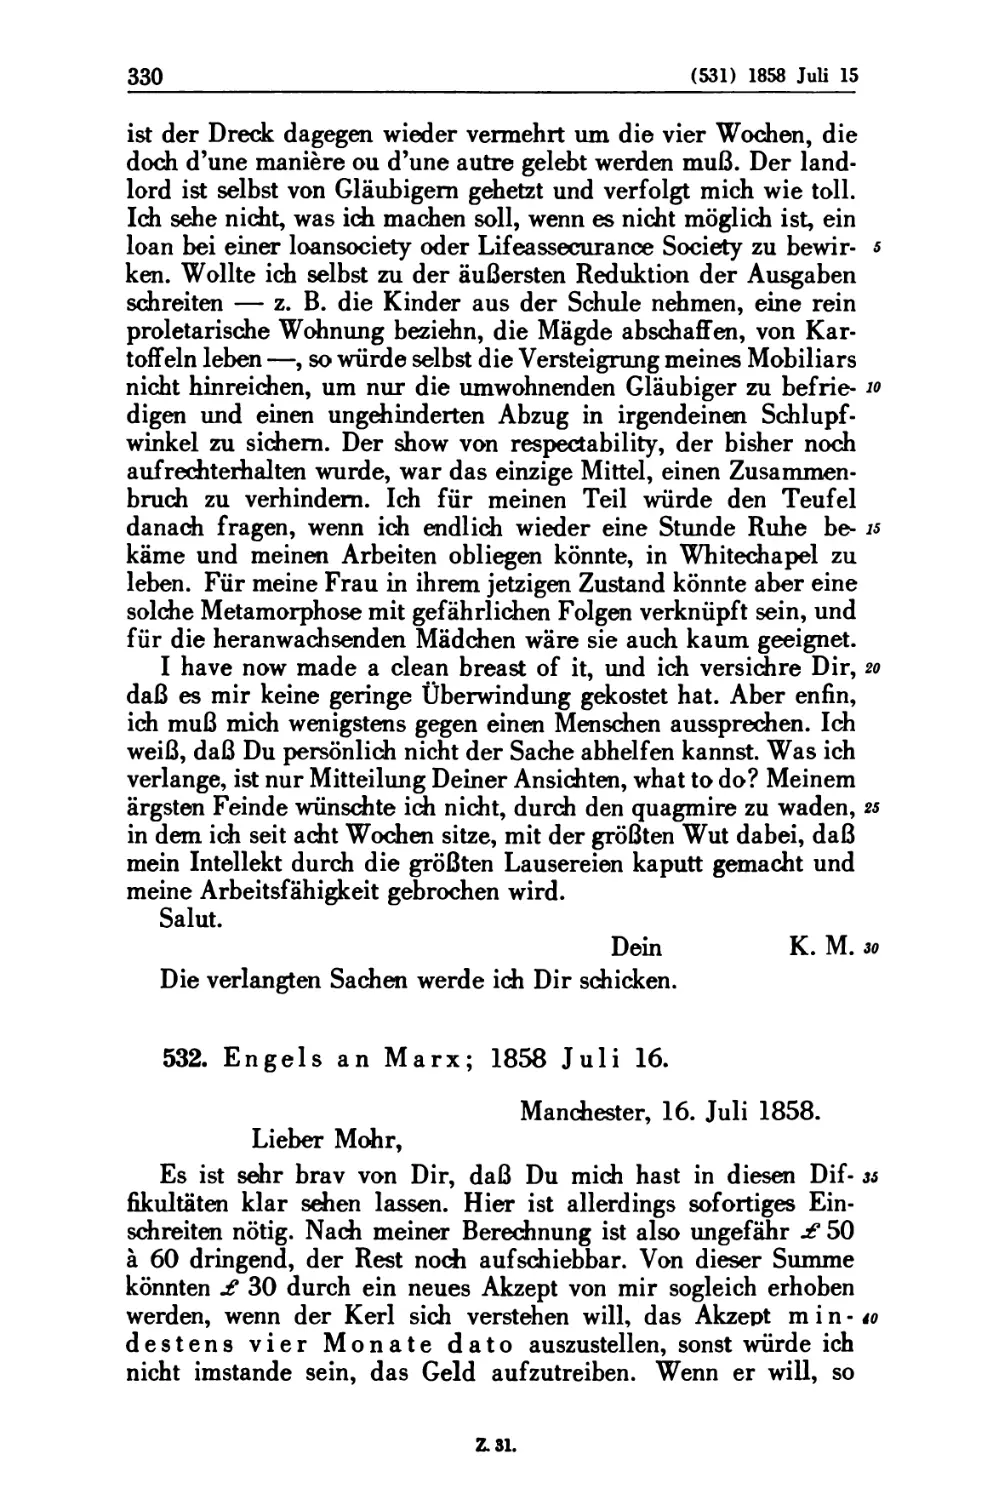 532. Engels an Marx; 1858 Juli 16